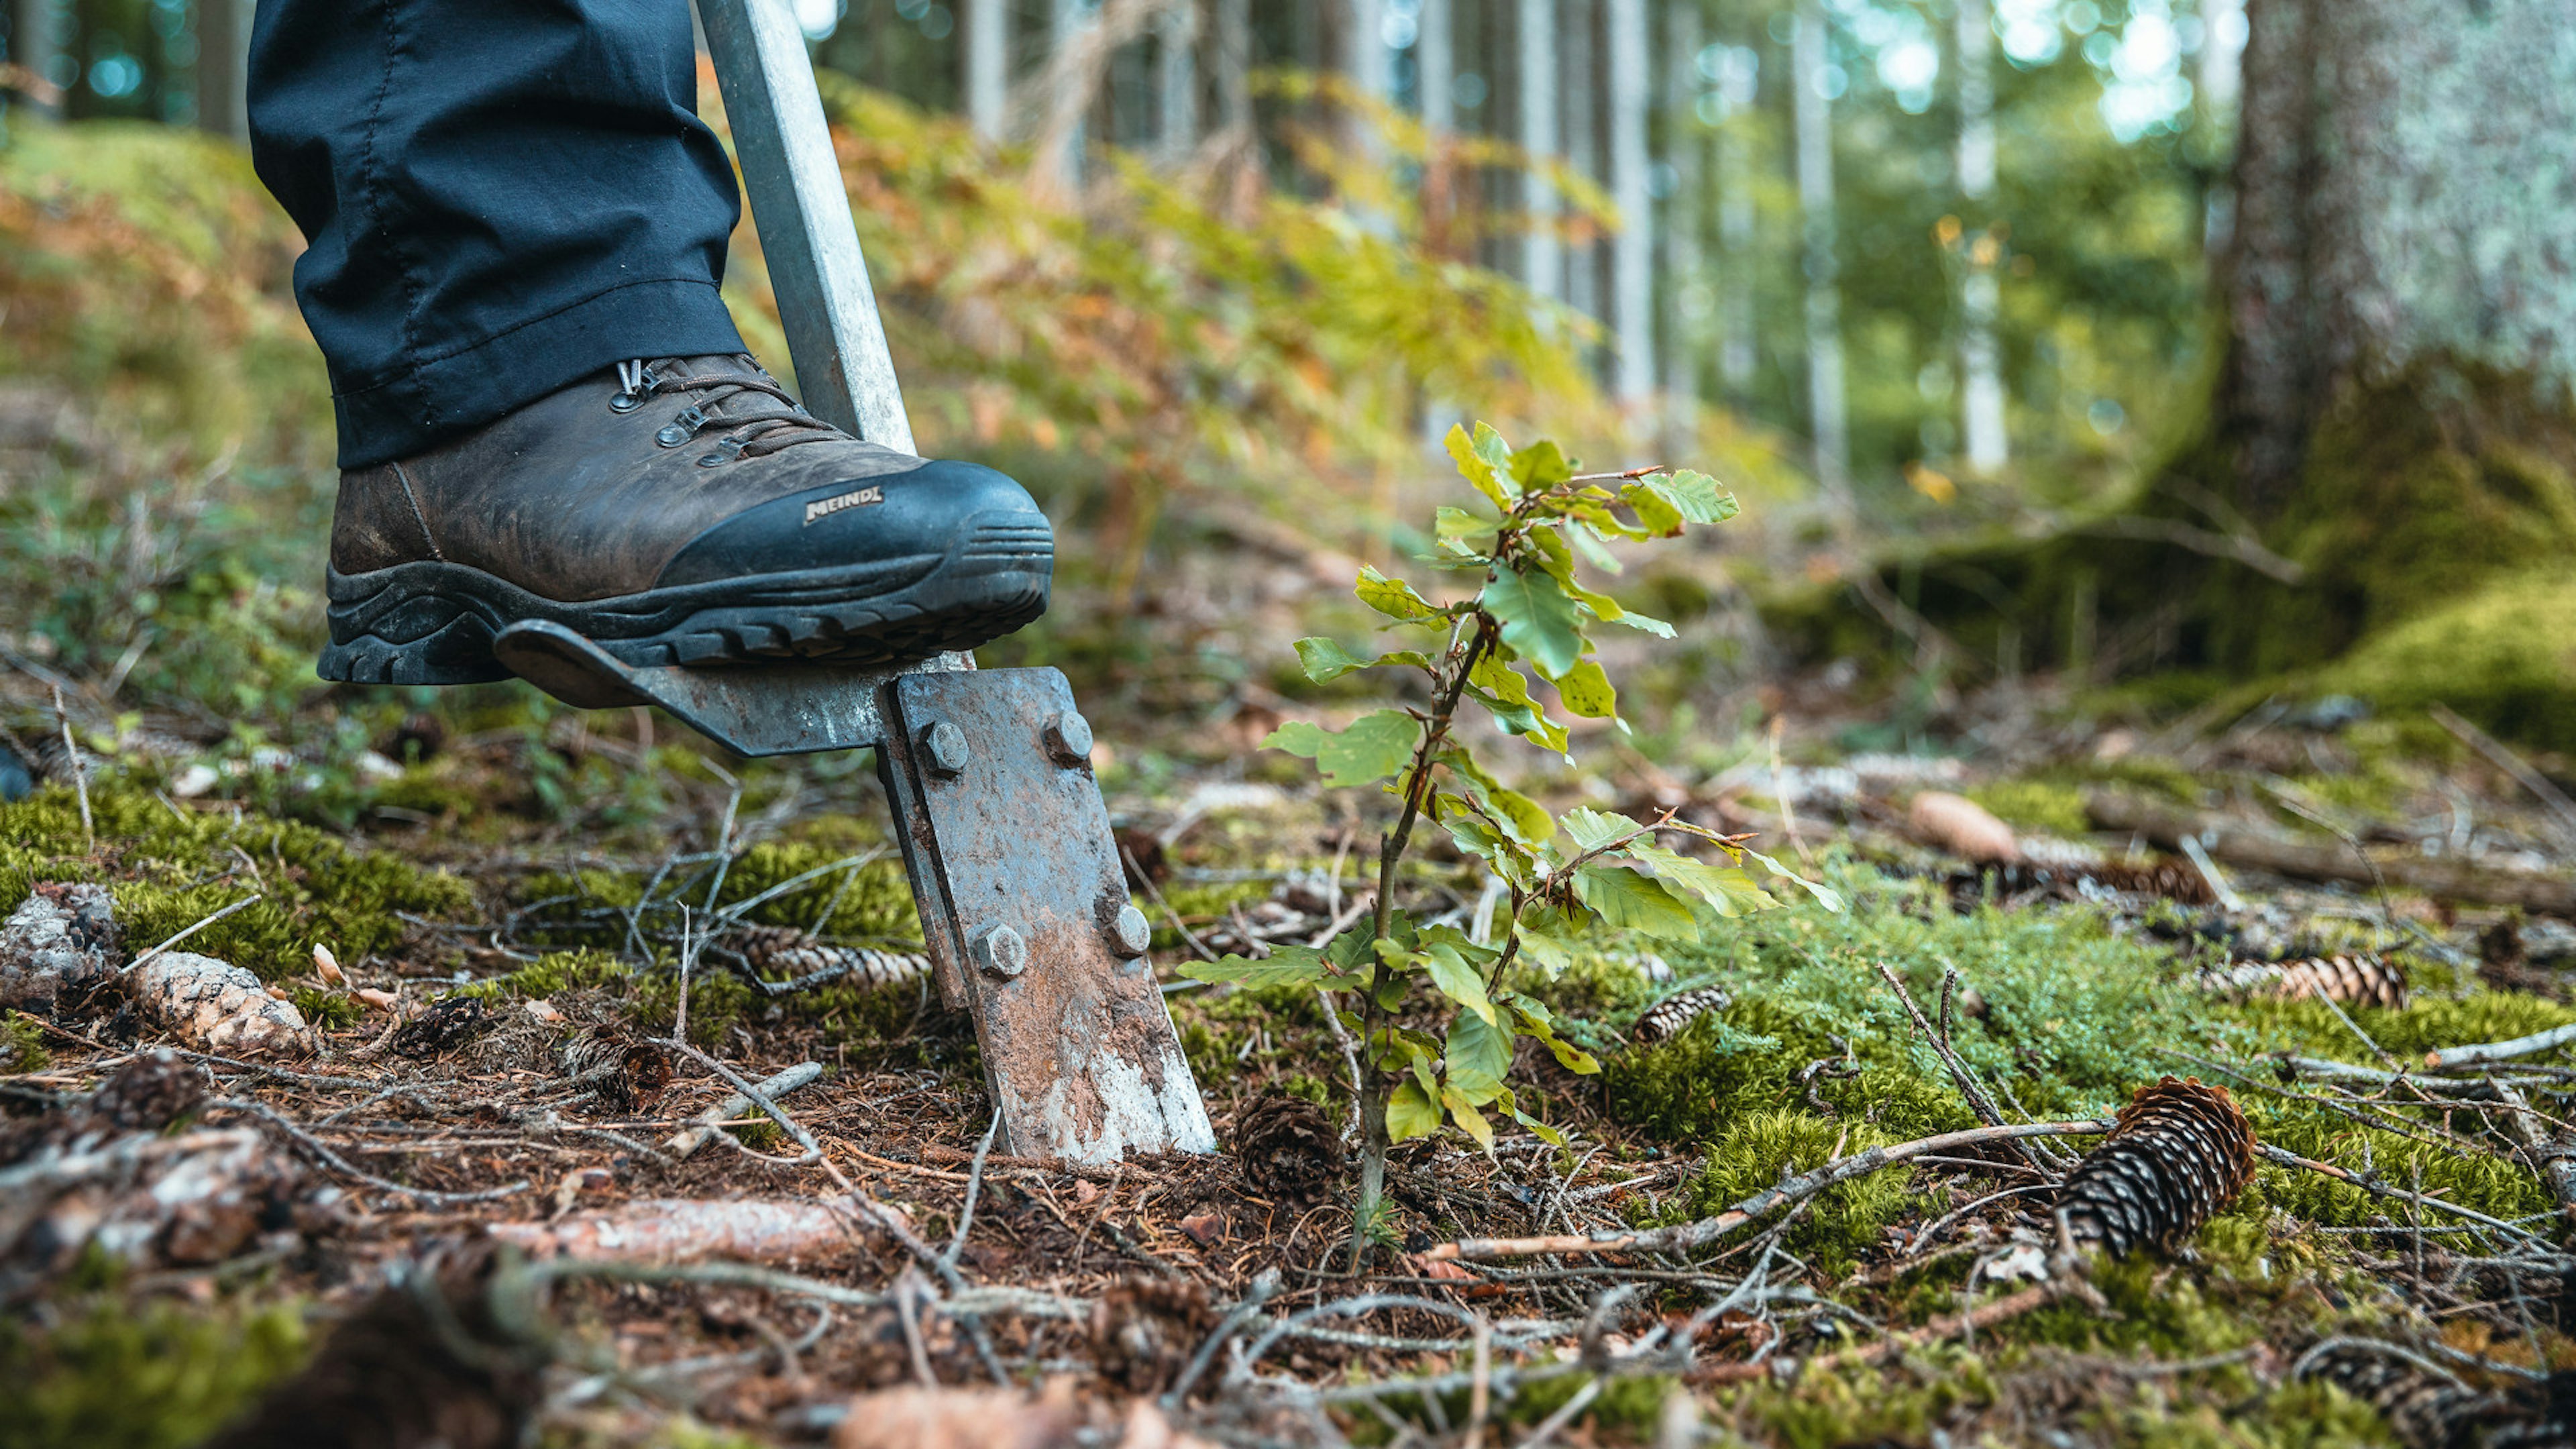 Detailaufnahme wie ein Fuß in einem Wanderschuh den Spaten in den Waldboden sticht